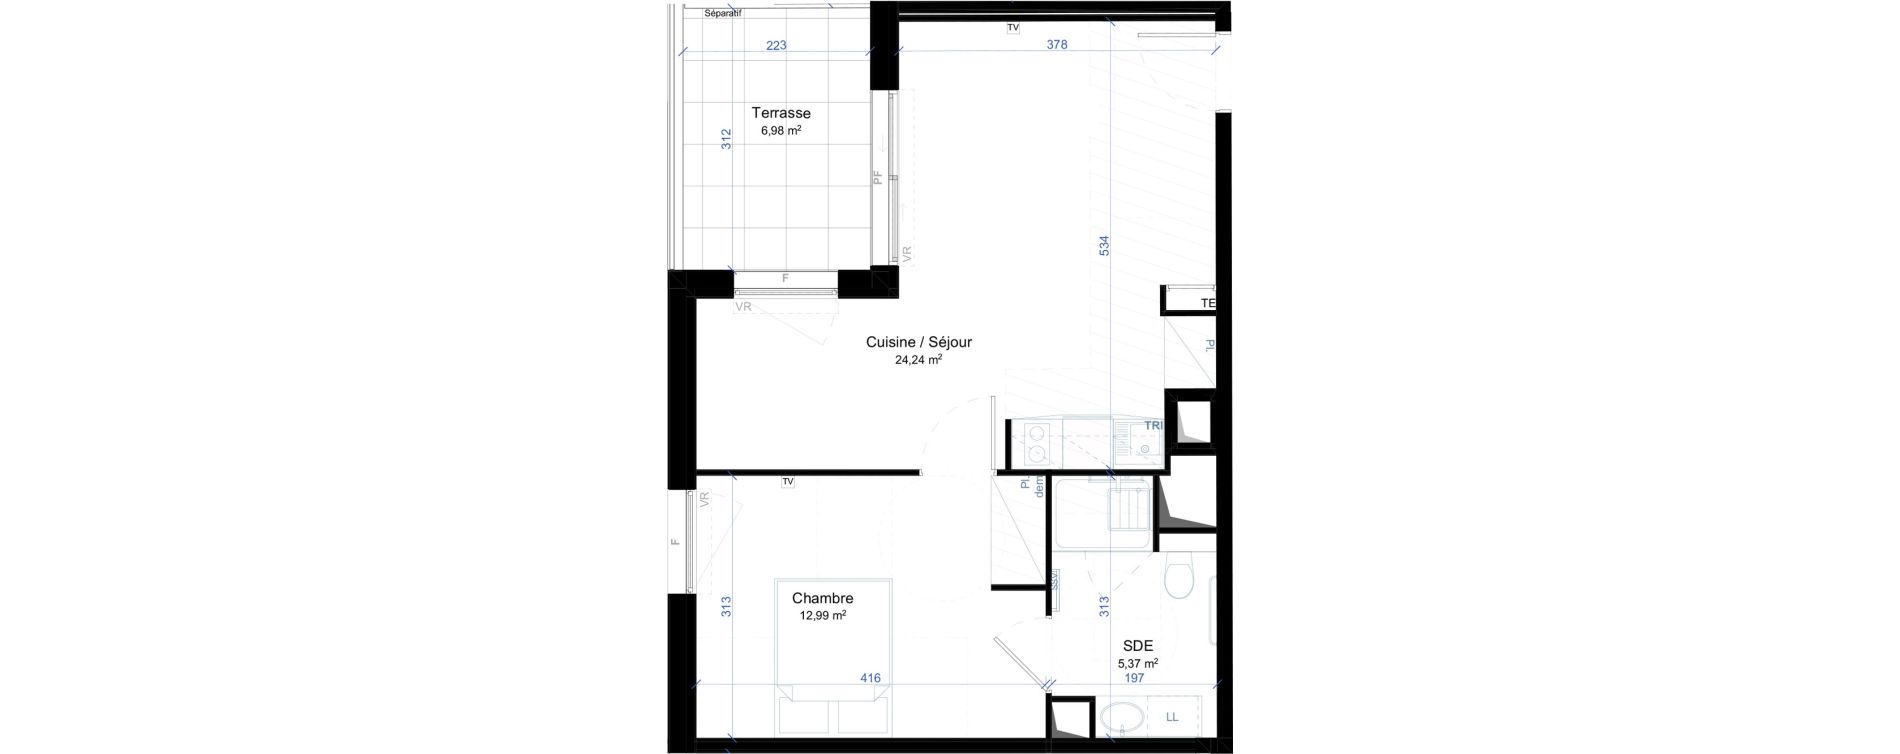 Appartement T2 meubl&eacute; de 42,60 m2 &agrave; Narbonne Anatole france - gare